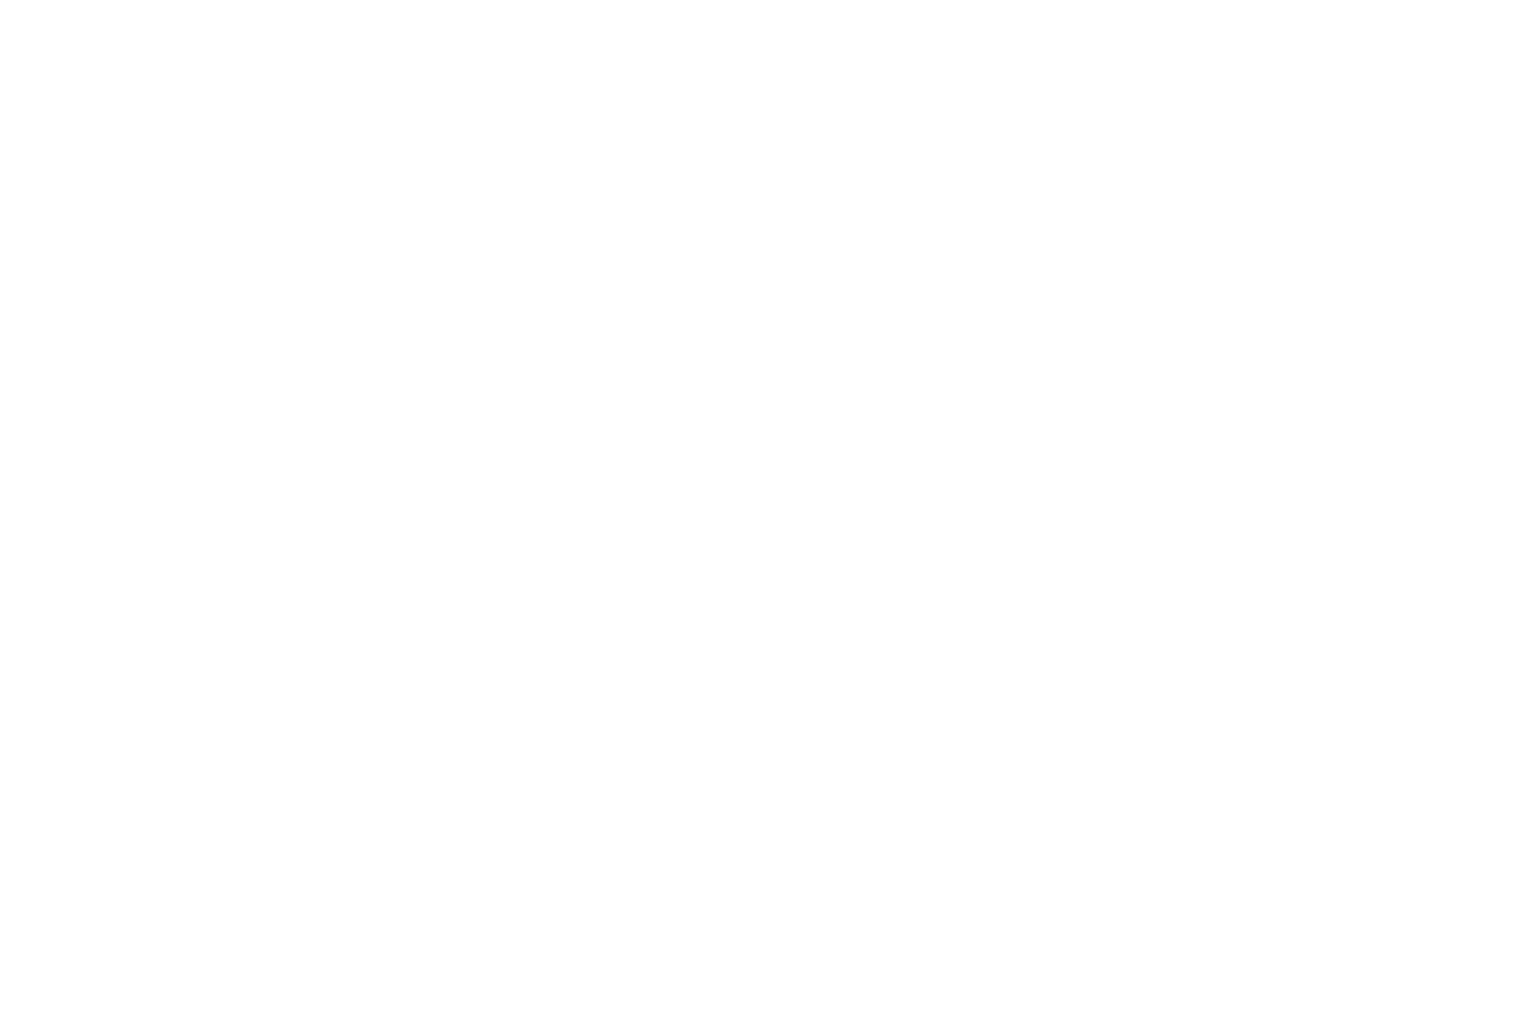 Britvic logo for dark backgrounds (transparent PNG)